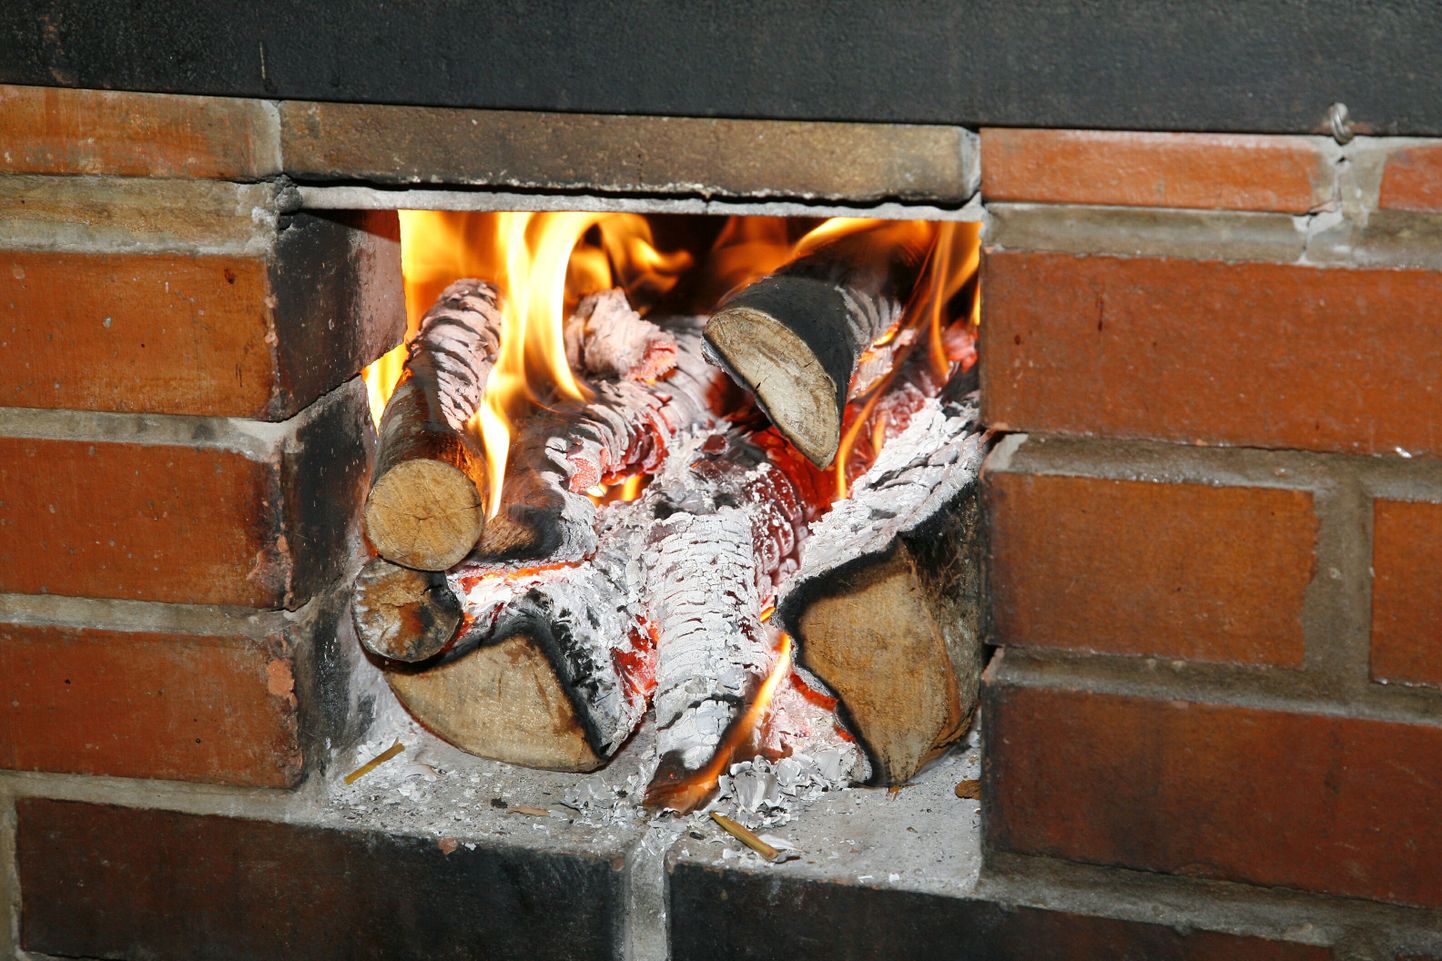 Halgude põletamiseks tuleb need pliidi alla või kaminasse panna. Küdevale pliidile tõstes võivad nad tulekahju põhjustada. Foto on illustreeriv.